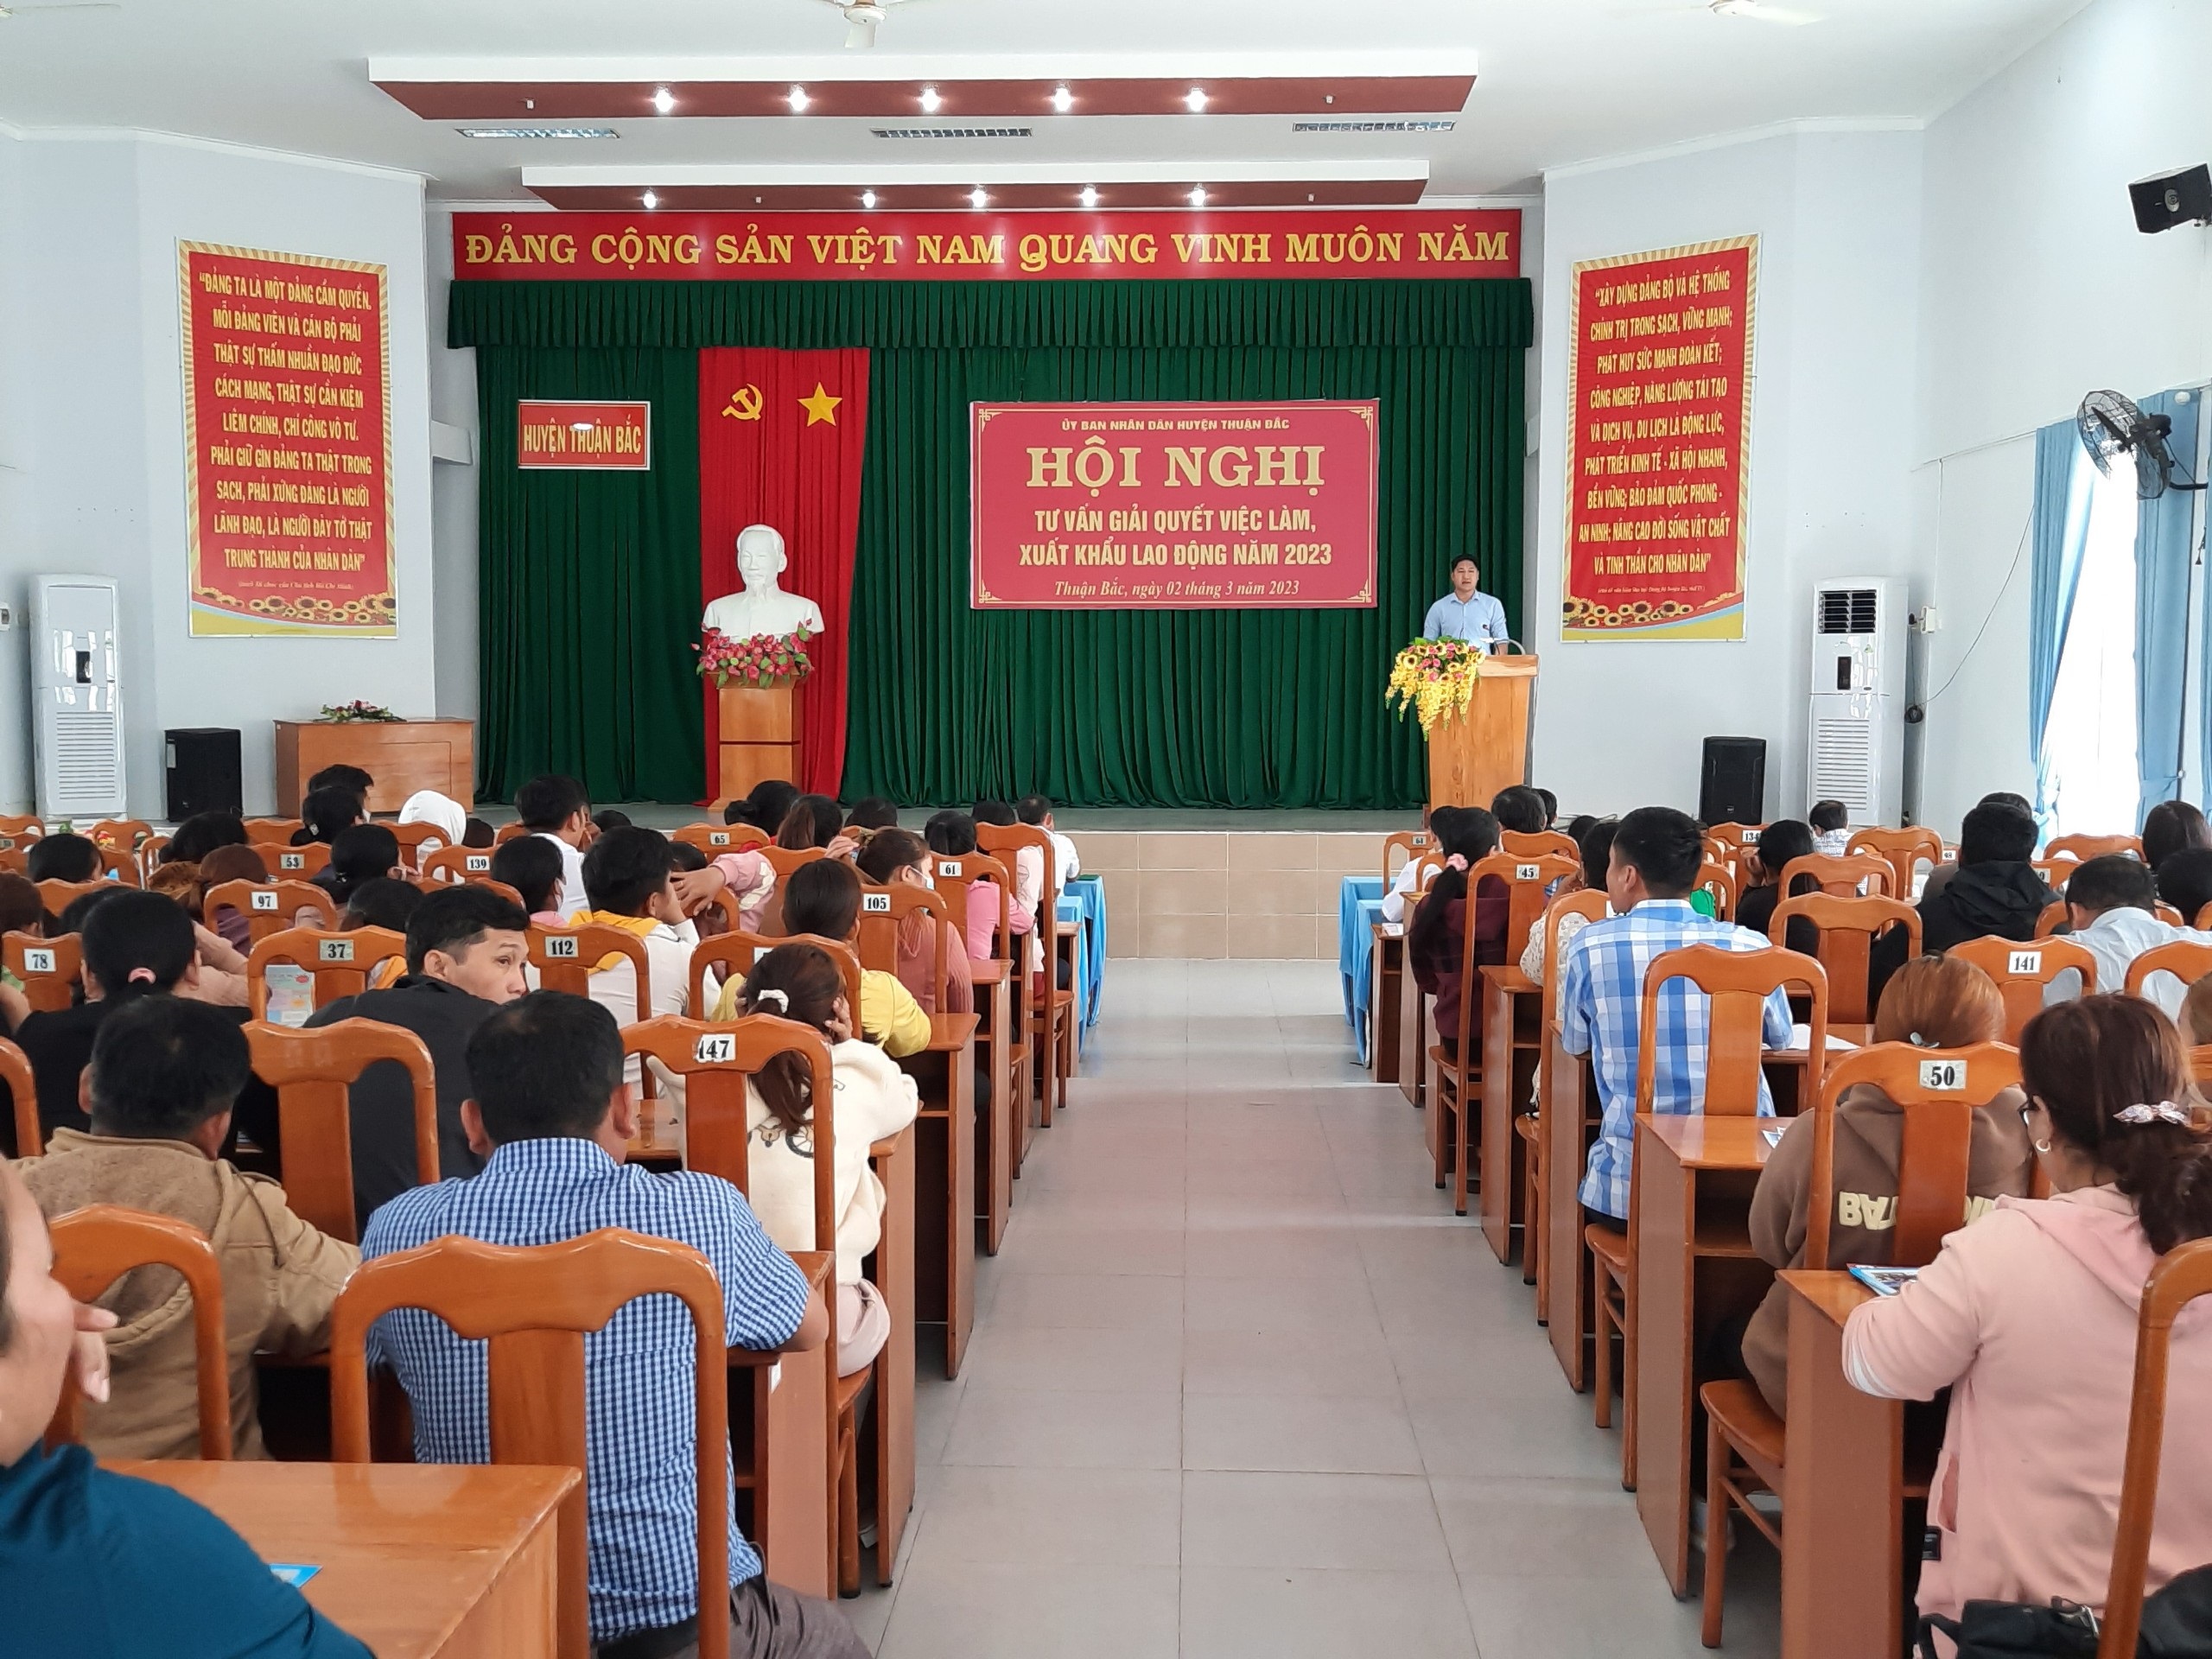 Thuận Bắc: Tổ chức hội nghị tư vấn, giới thiệu việc làm và xuất khẩu lao động cho lao động địa phương